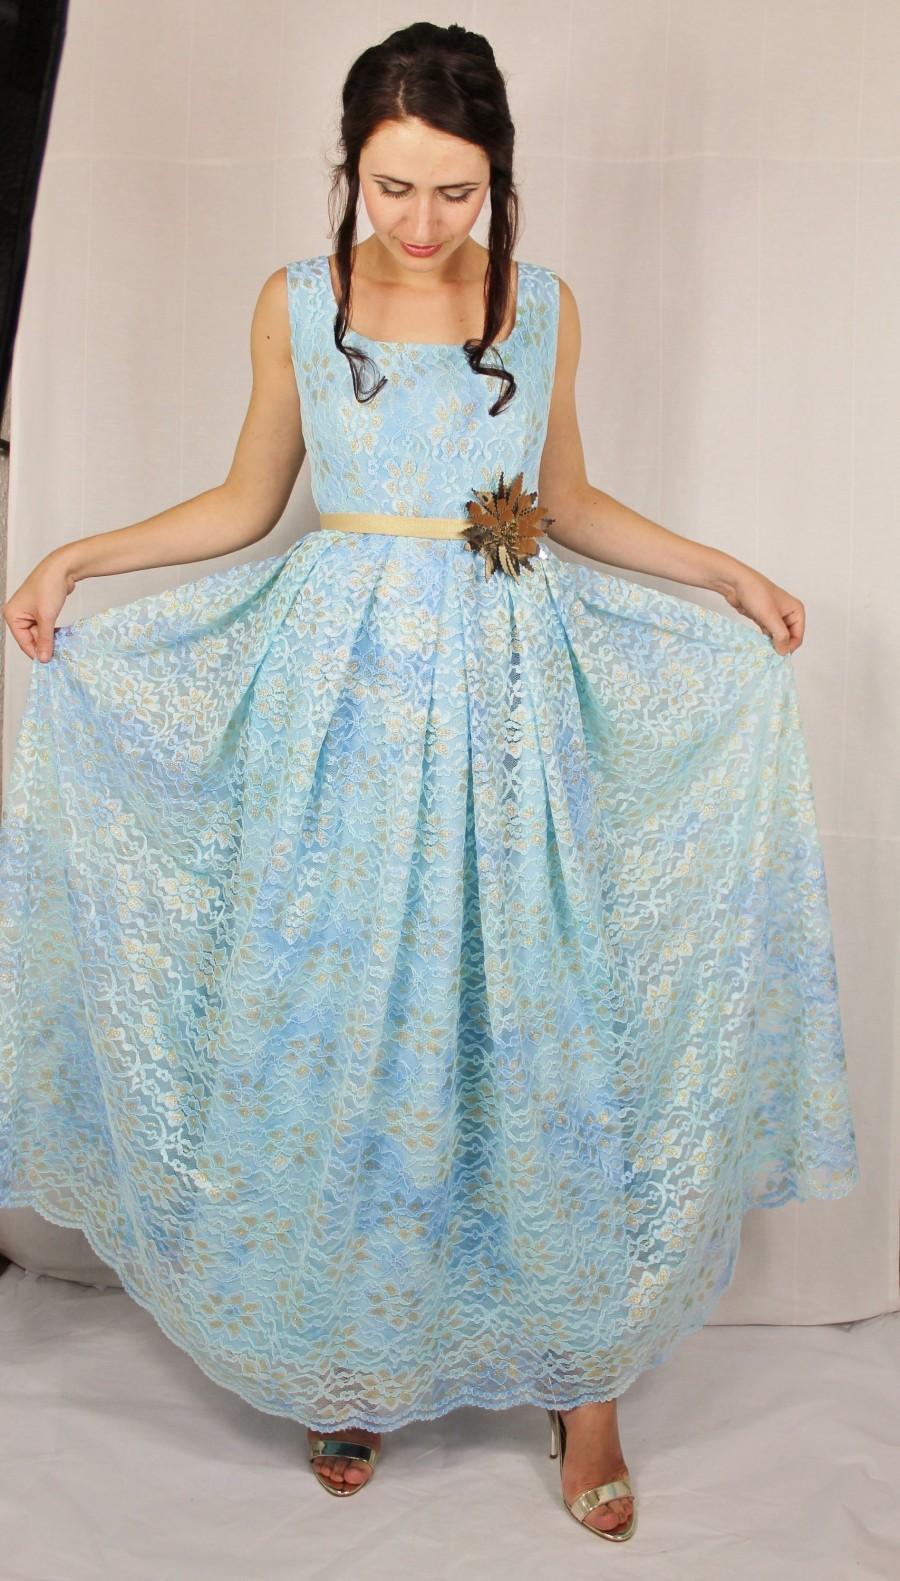 زفاف - Long casual blue lace dress with golden details/lace dress/floral dress/blue dress/long dress/bridesmaids dress/blue dresses for women